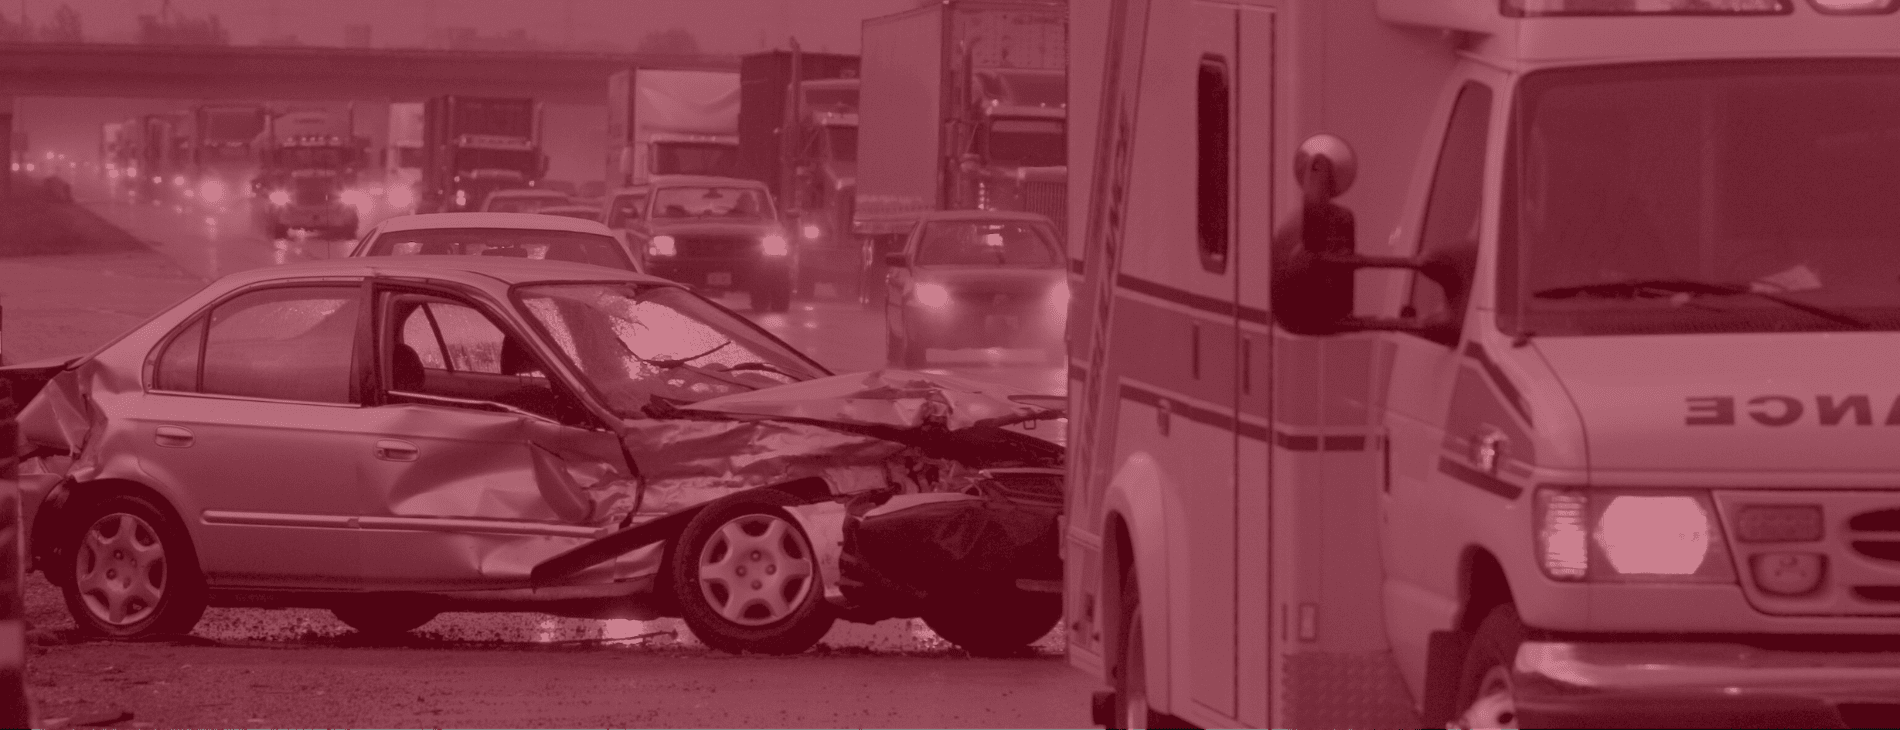 Harvard Park car crash